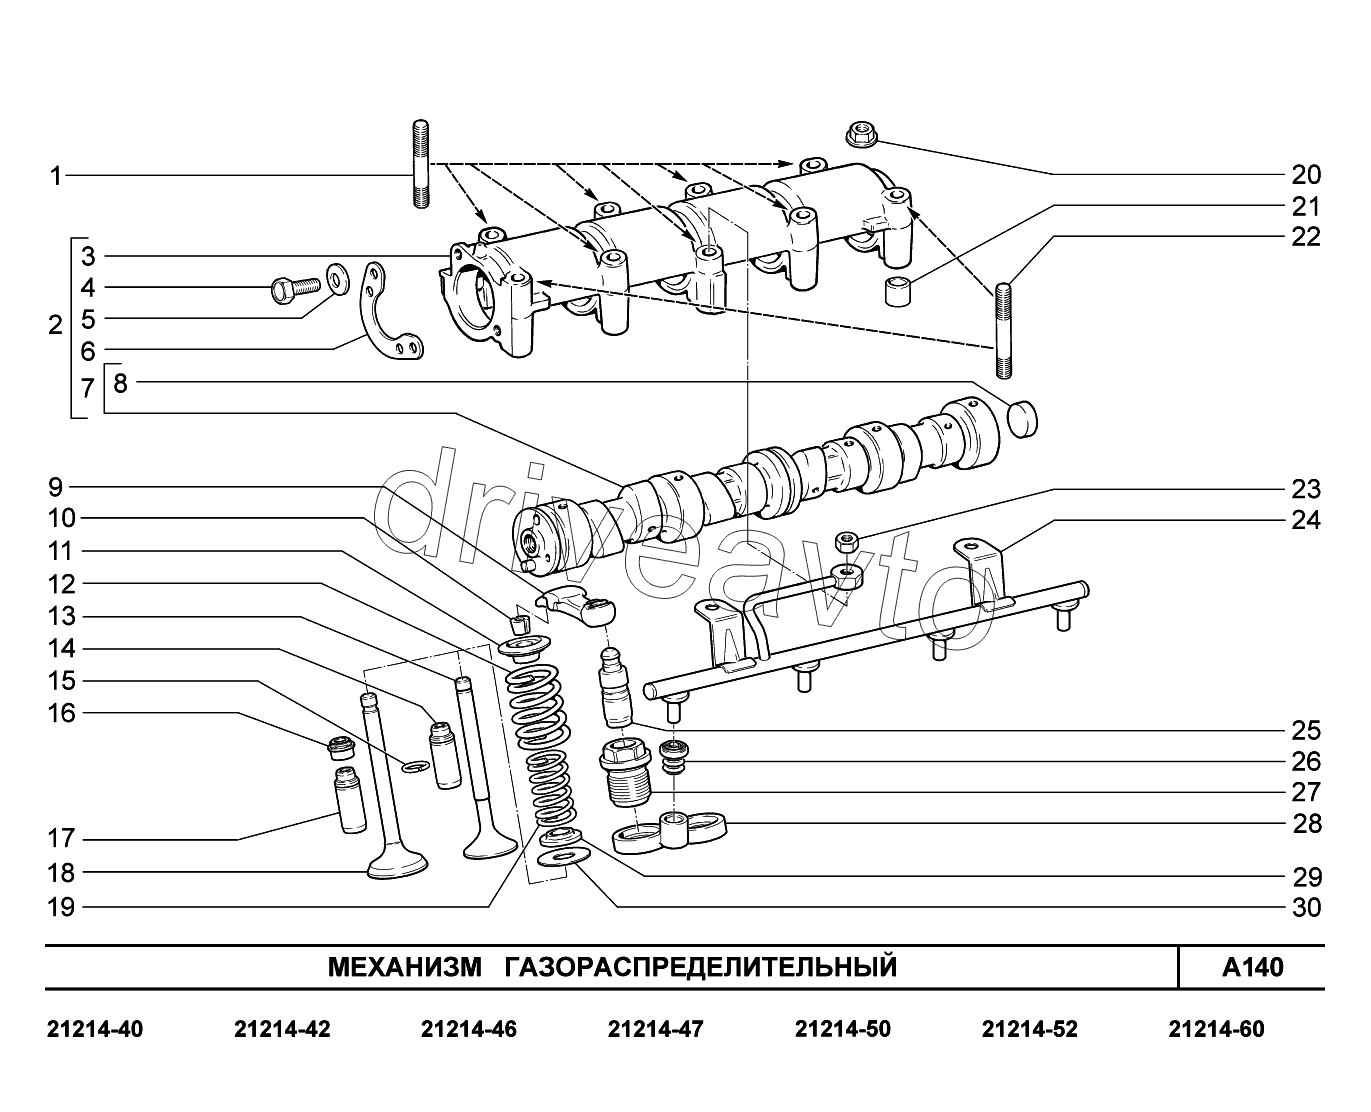 A140. Механизм газораспределительный